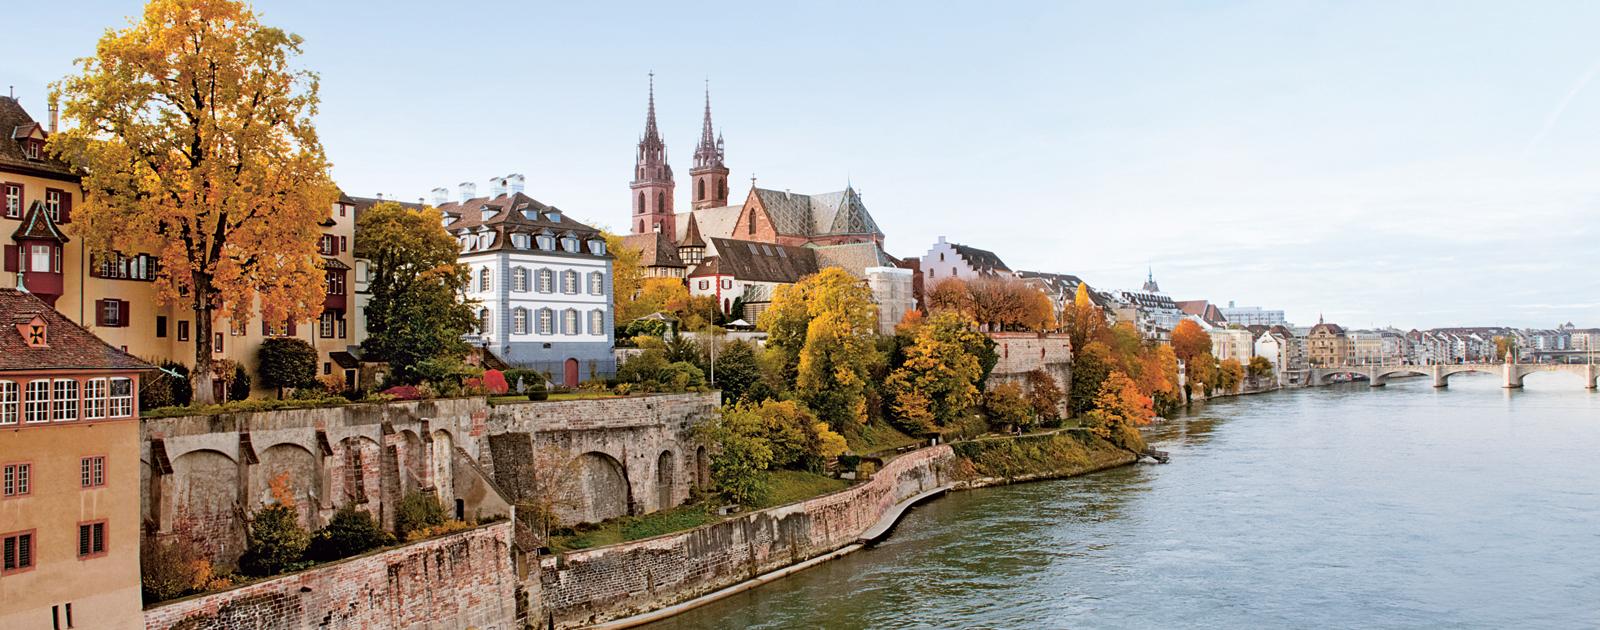 Базель /Basel, Швейцария - путеводитель по городу Базель, Достопримечательности Базеля. Что посмотреть в Базеле